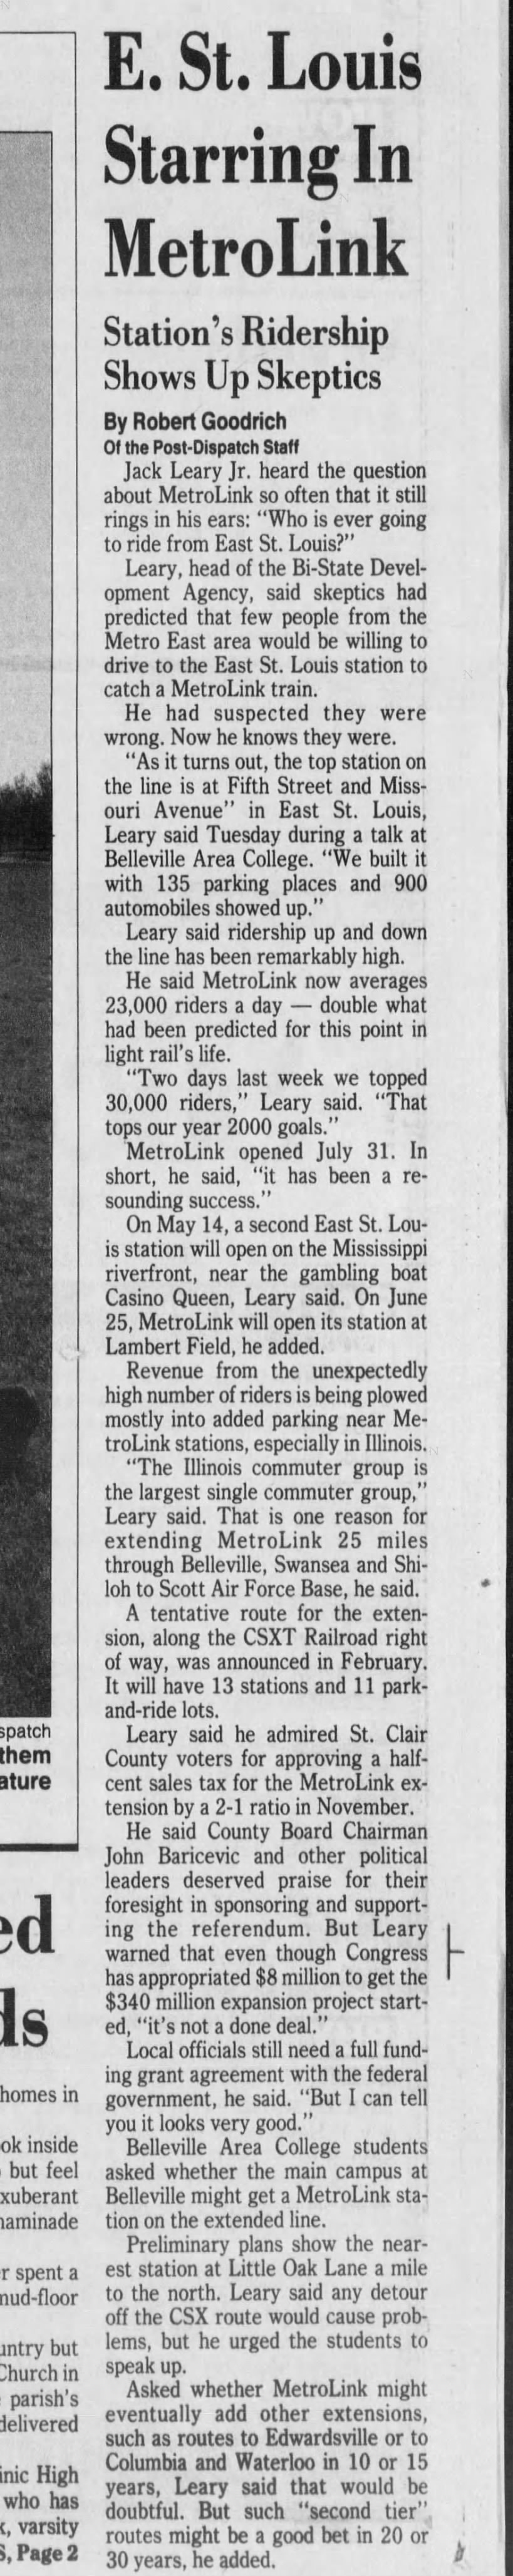 E. Riverfront MetroLink, April 27, 1994